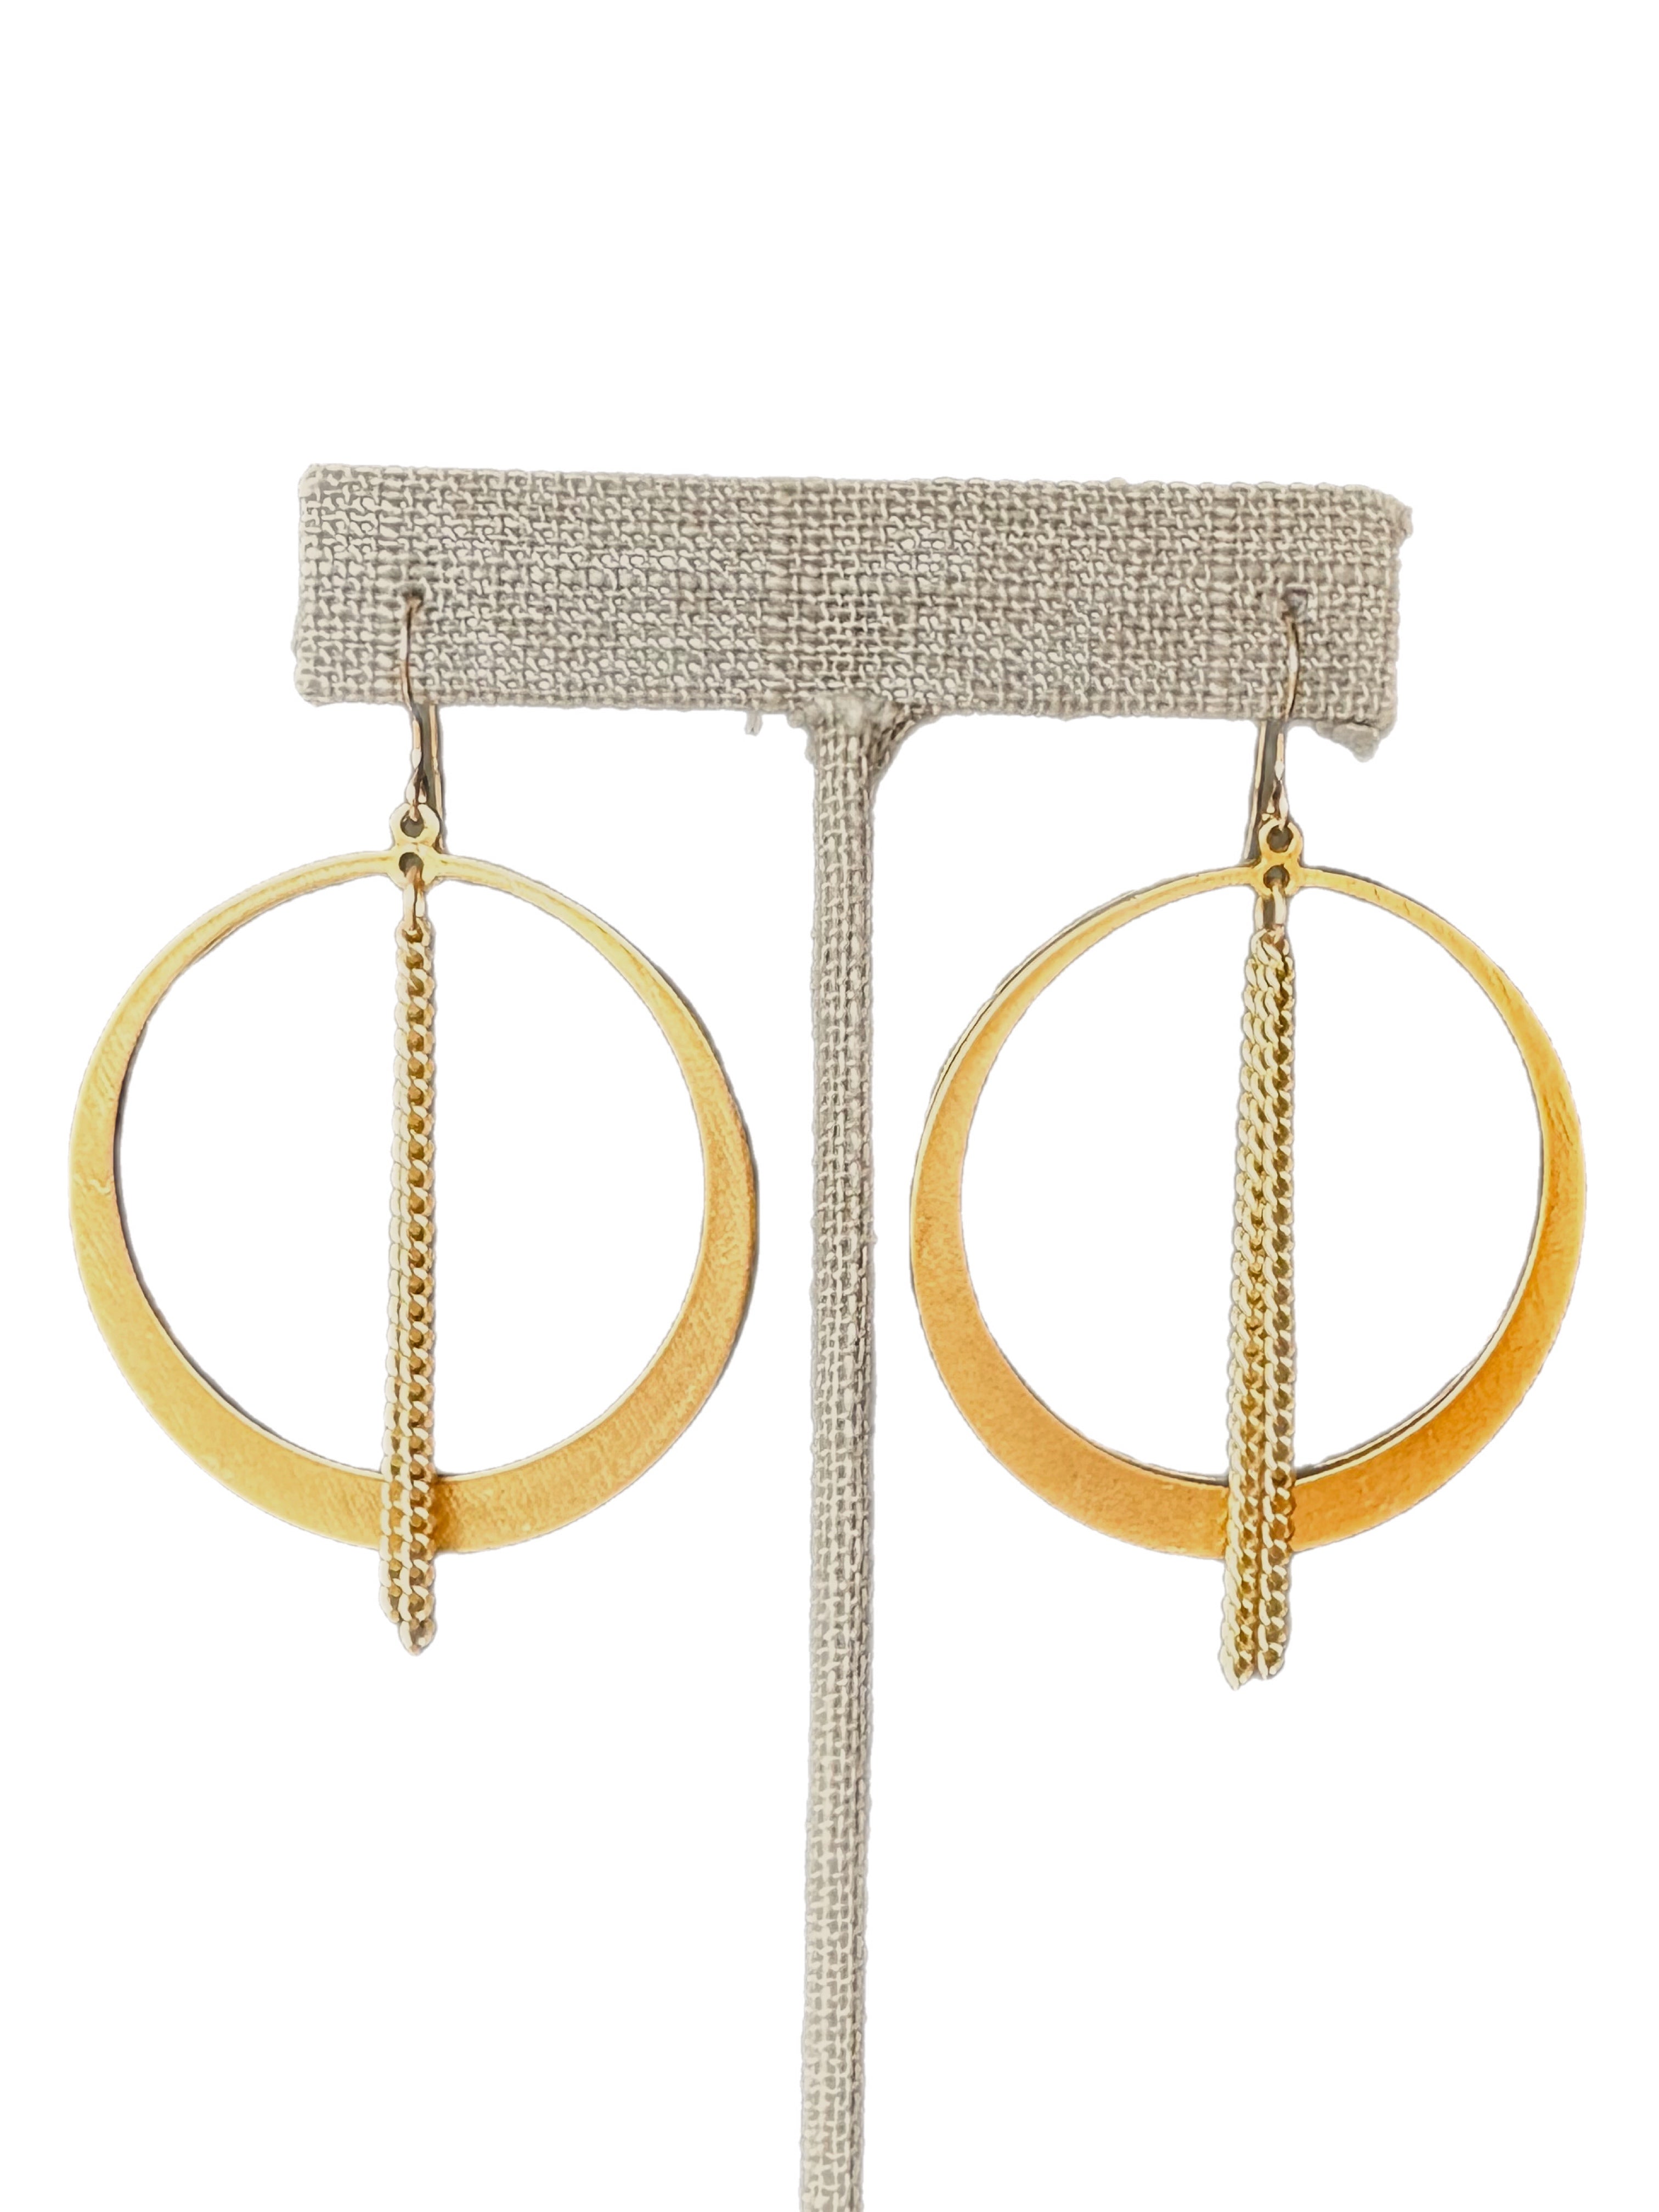 Jasmine - earrings with organic hoop and tassel drop